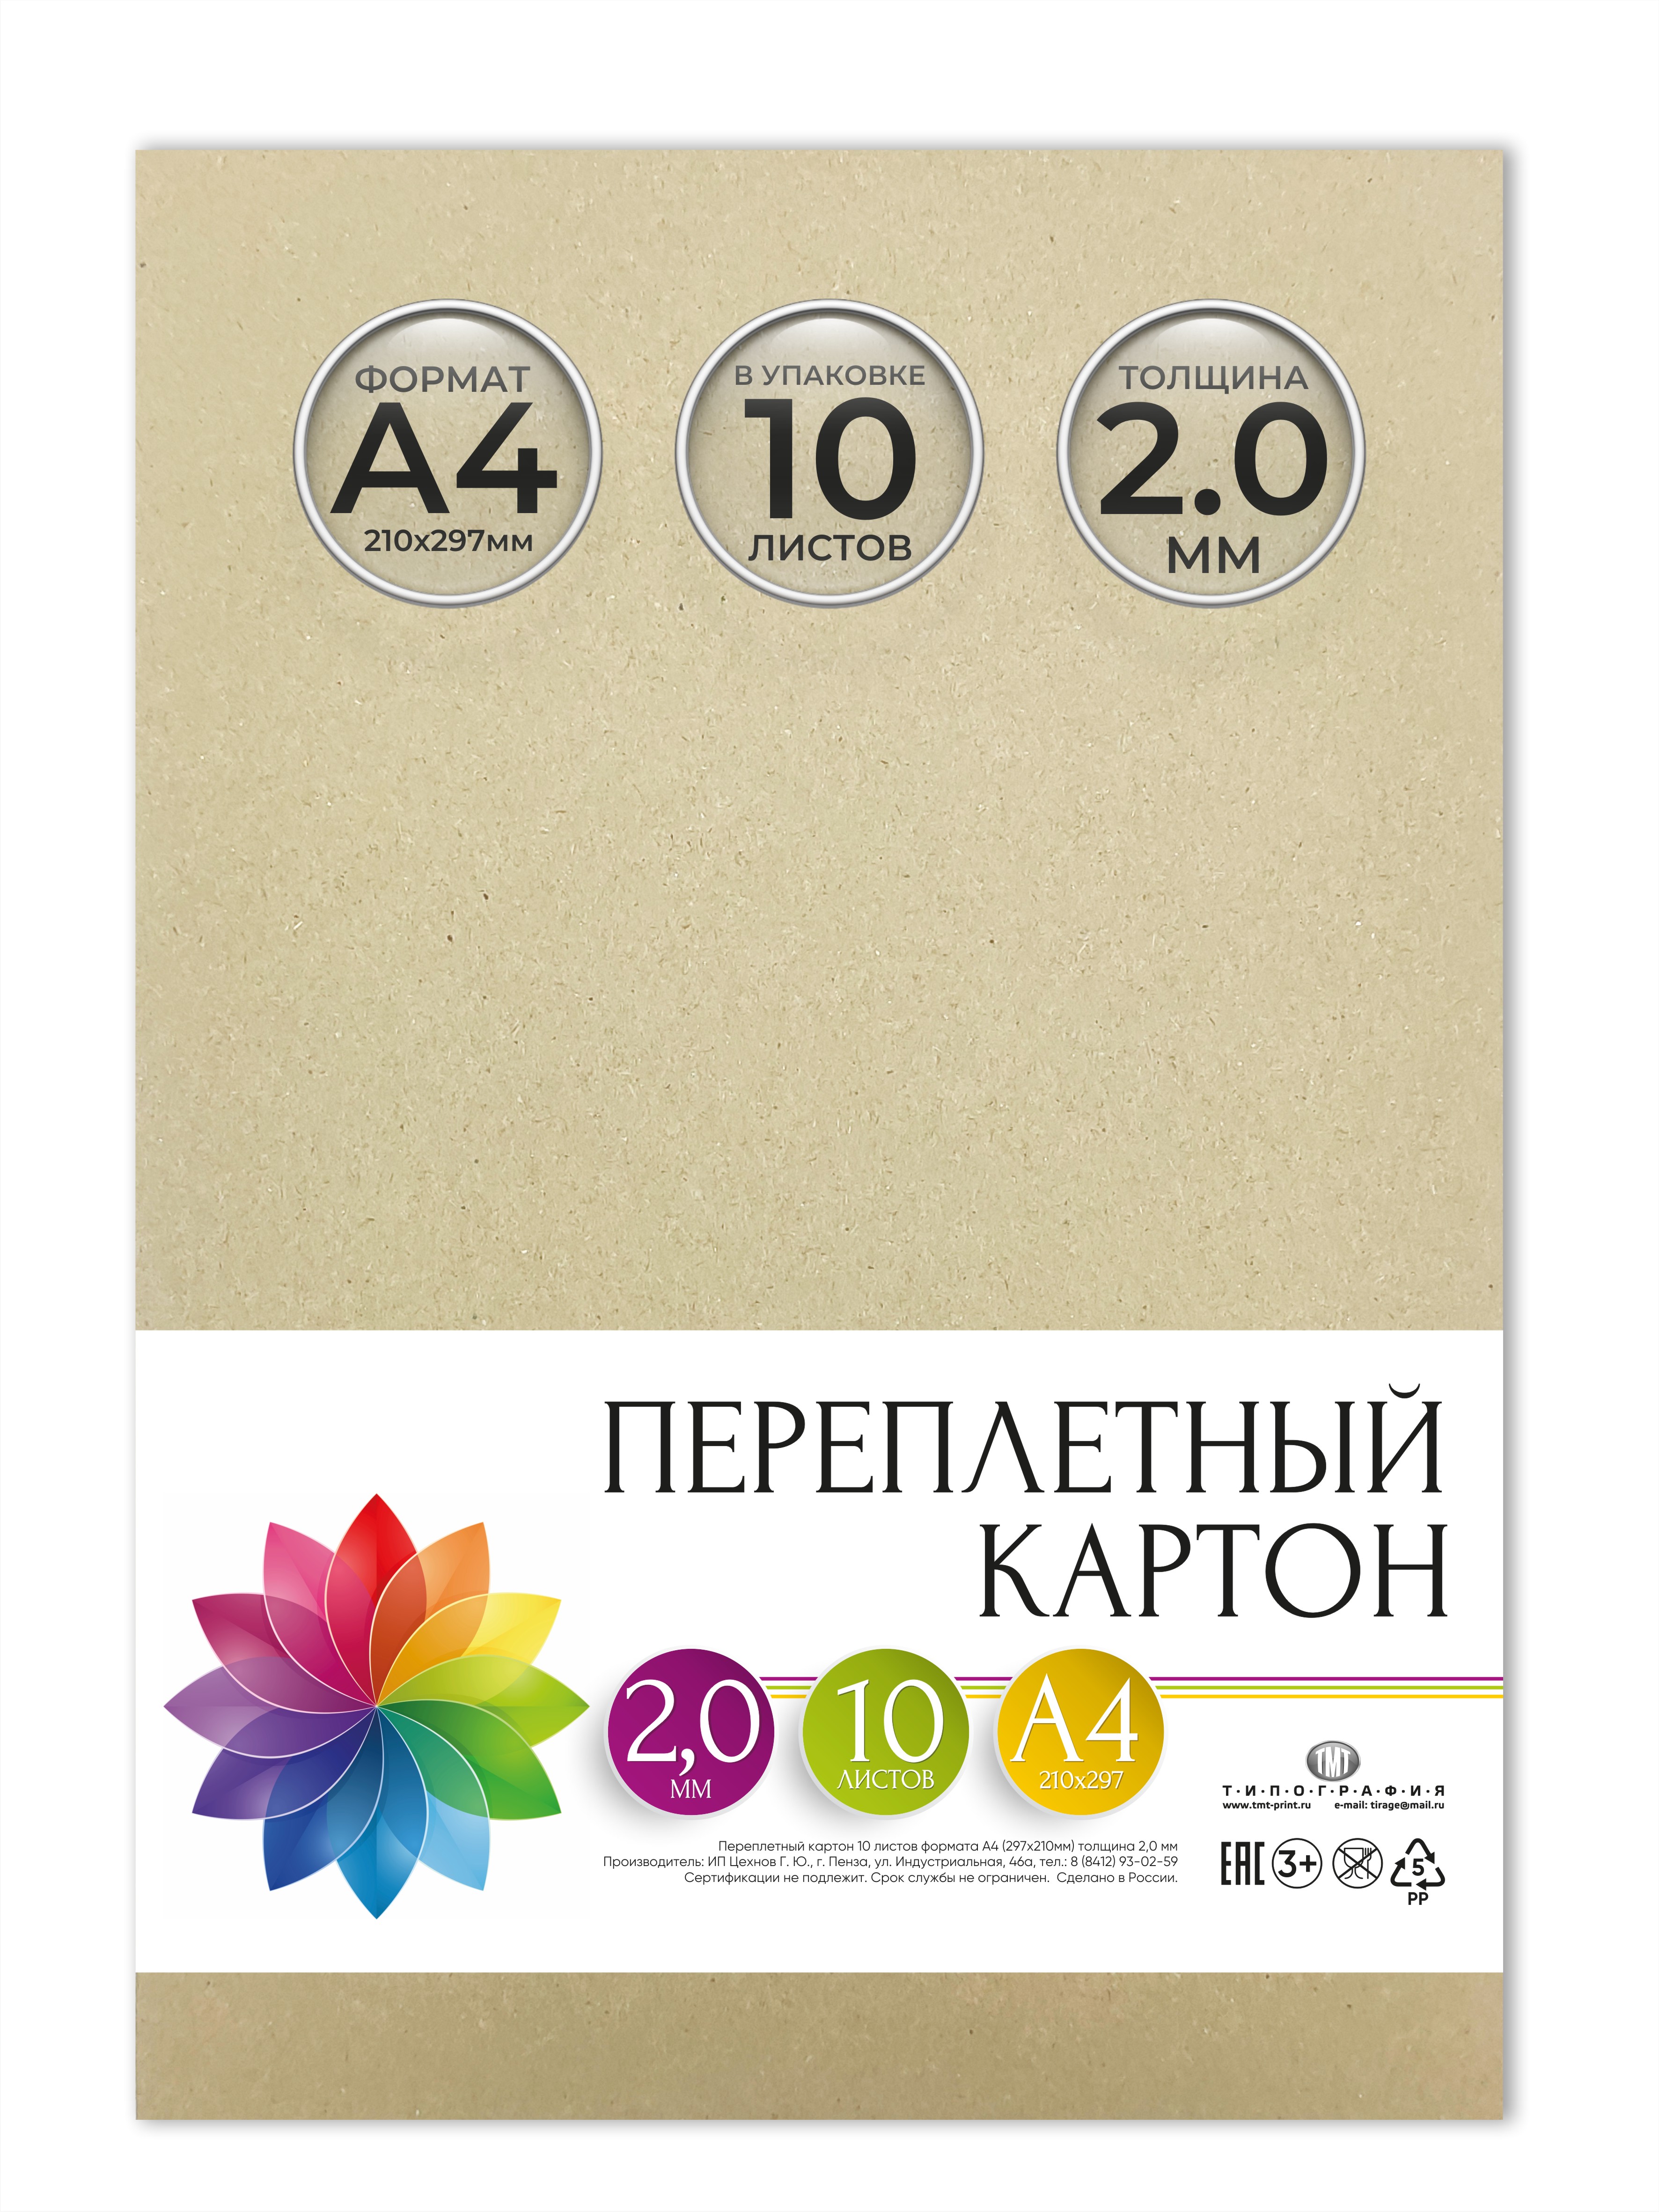 Картон переплетный Типография ТМТ, 10 листов, формат А4, толщина 2 мм